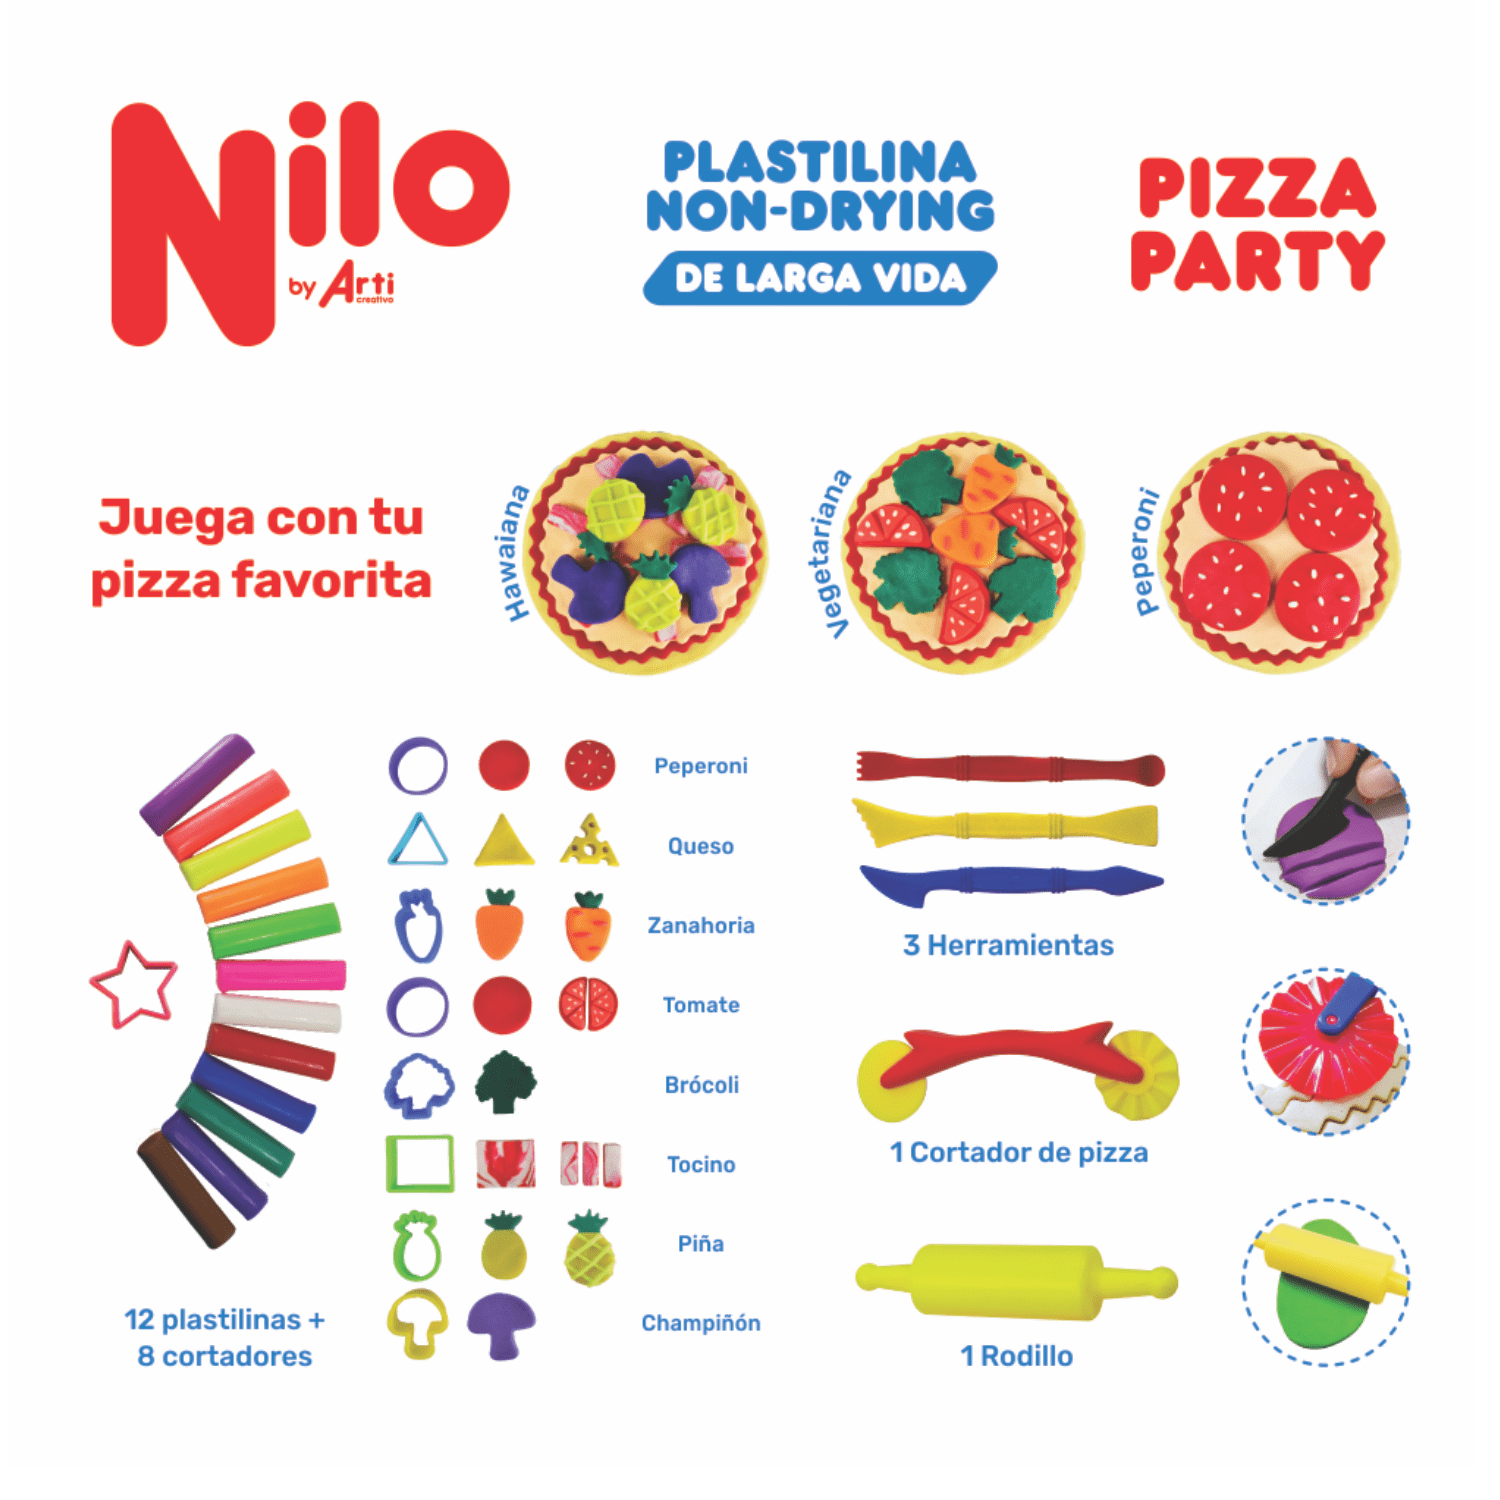 PLASTILINA NILO PIZZA PARTY: 12 PLASTILINAS + 8 CORTADORES + 3 HERRAMIENTAS + 1 RODILLO